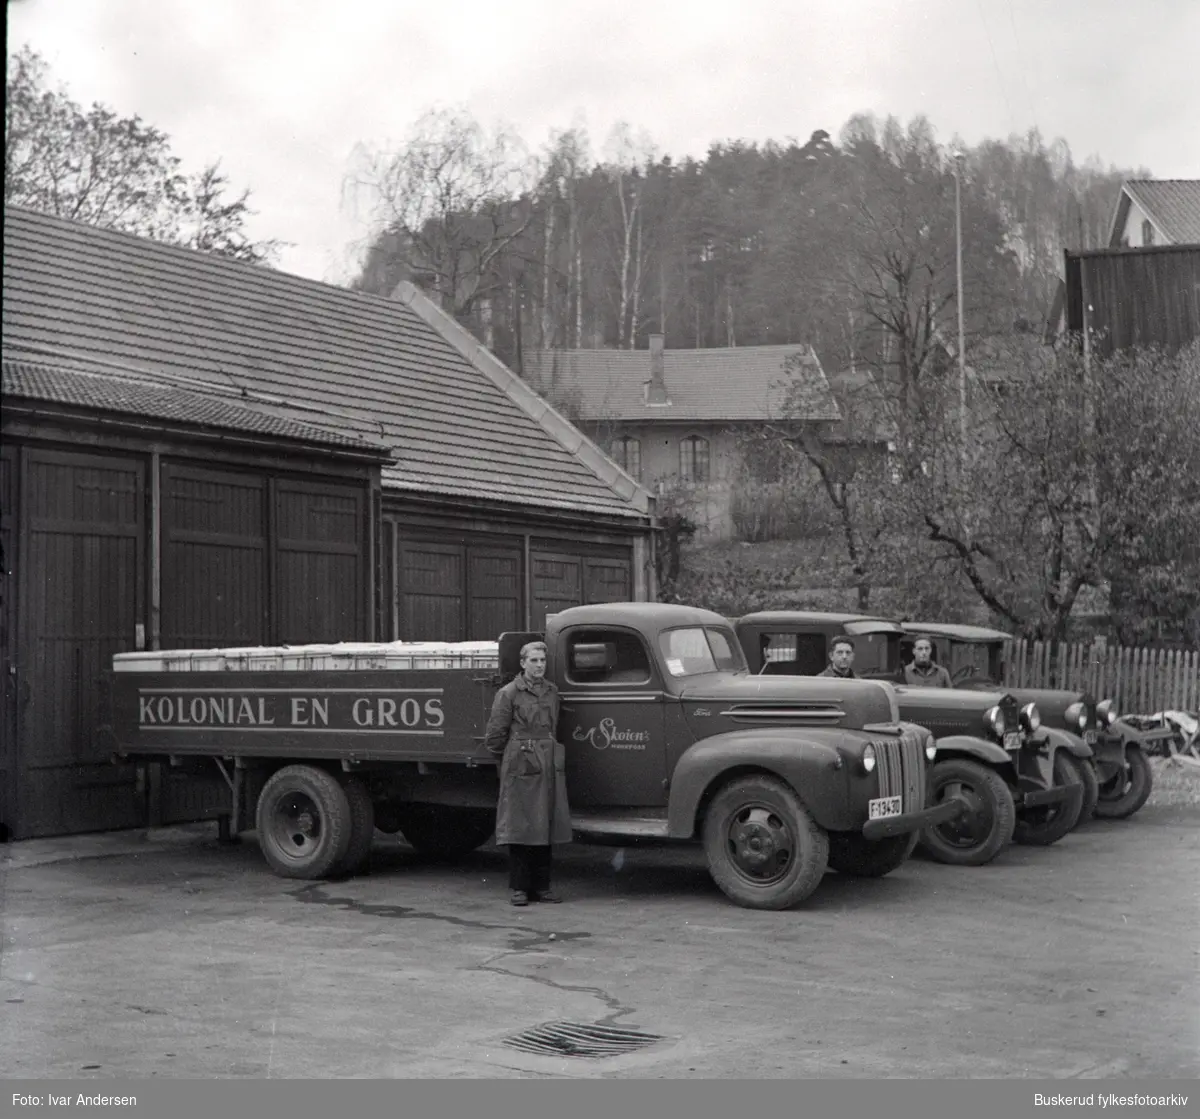 Bilparken ved Skøien kolonial i Hønefoss. Etablert i Hønefoss i 1923
Jac Lerberg først, fetter av E.M. Skøien